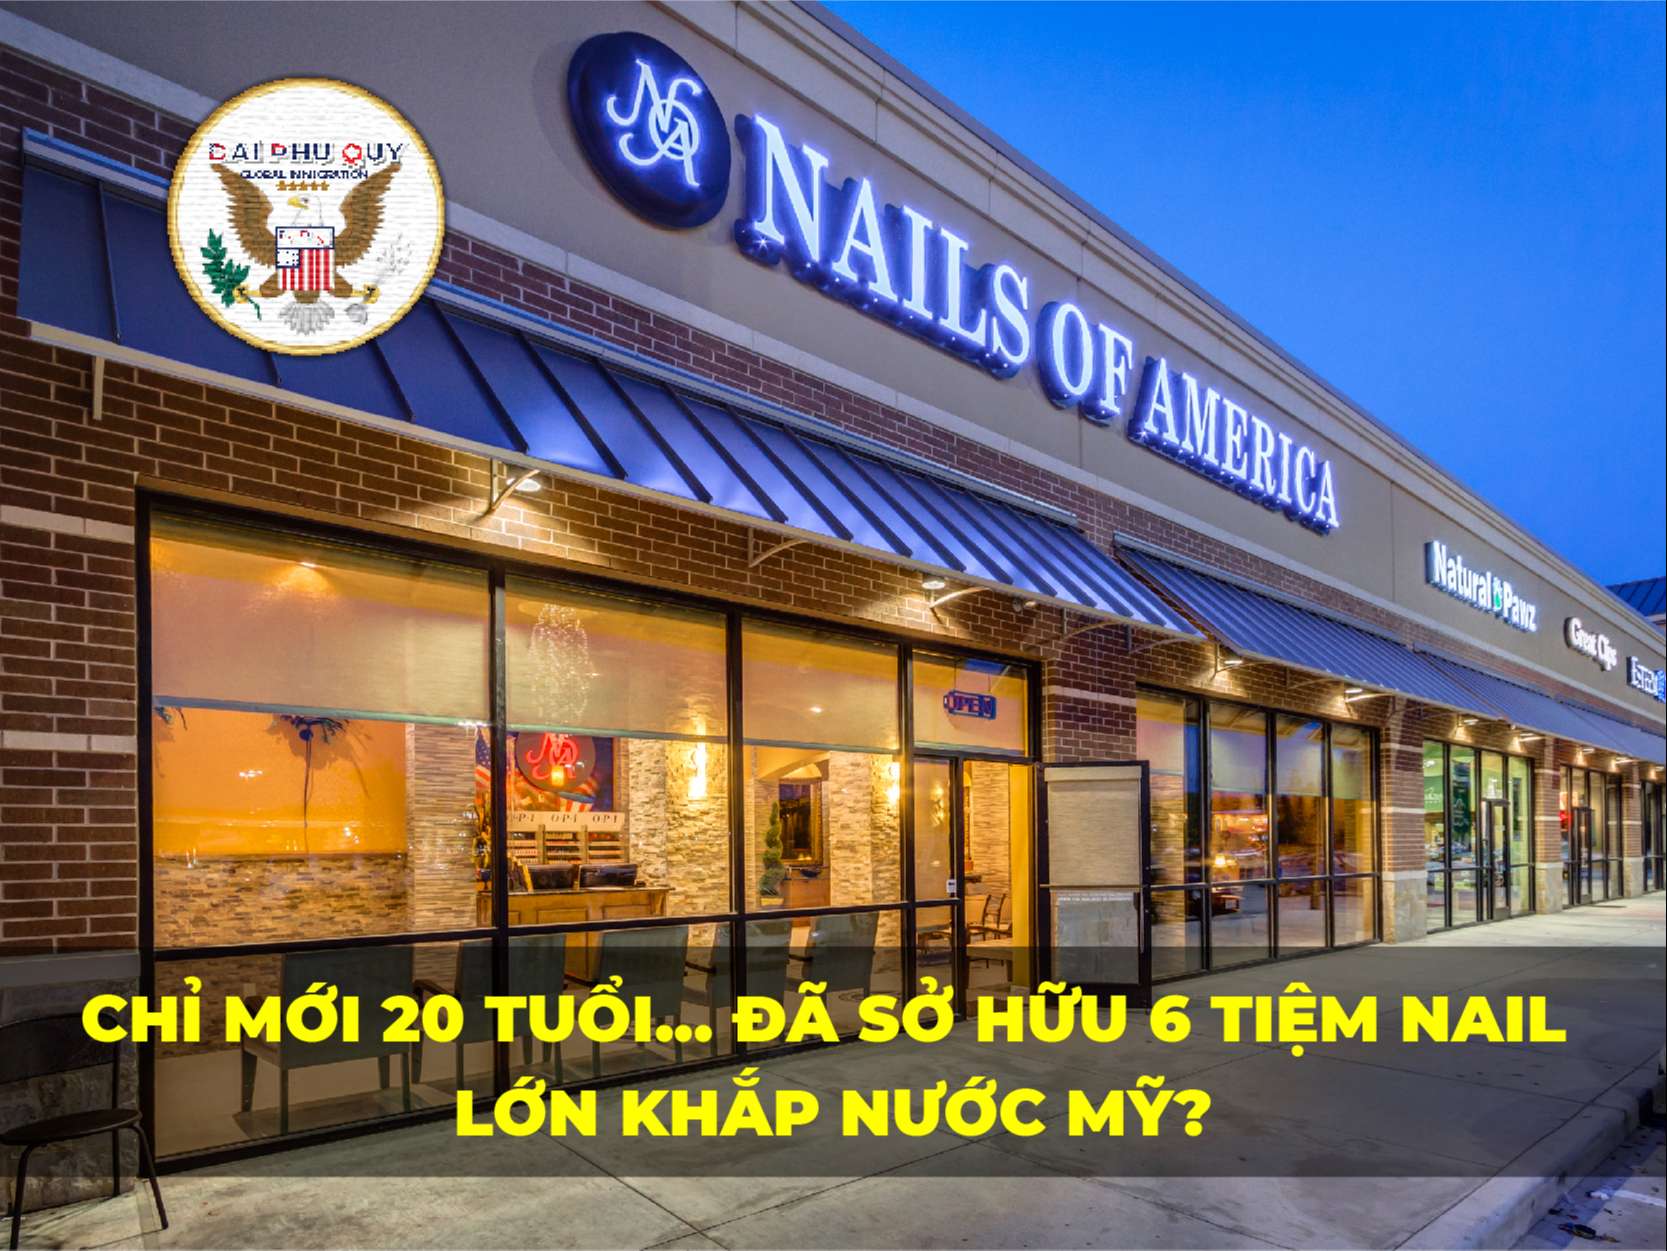 Chỉ mới 20 tuổi… Đã sở hữu 6 tiệm nail lớn khắp nước Mỹ?